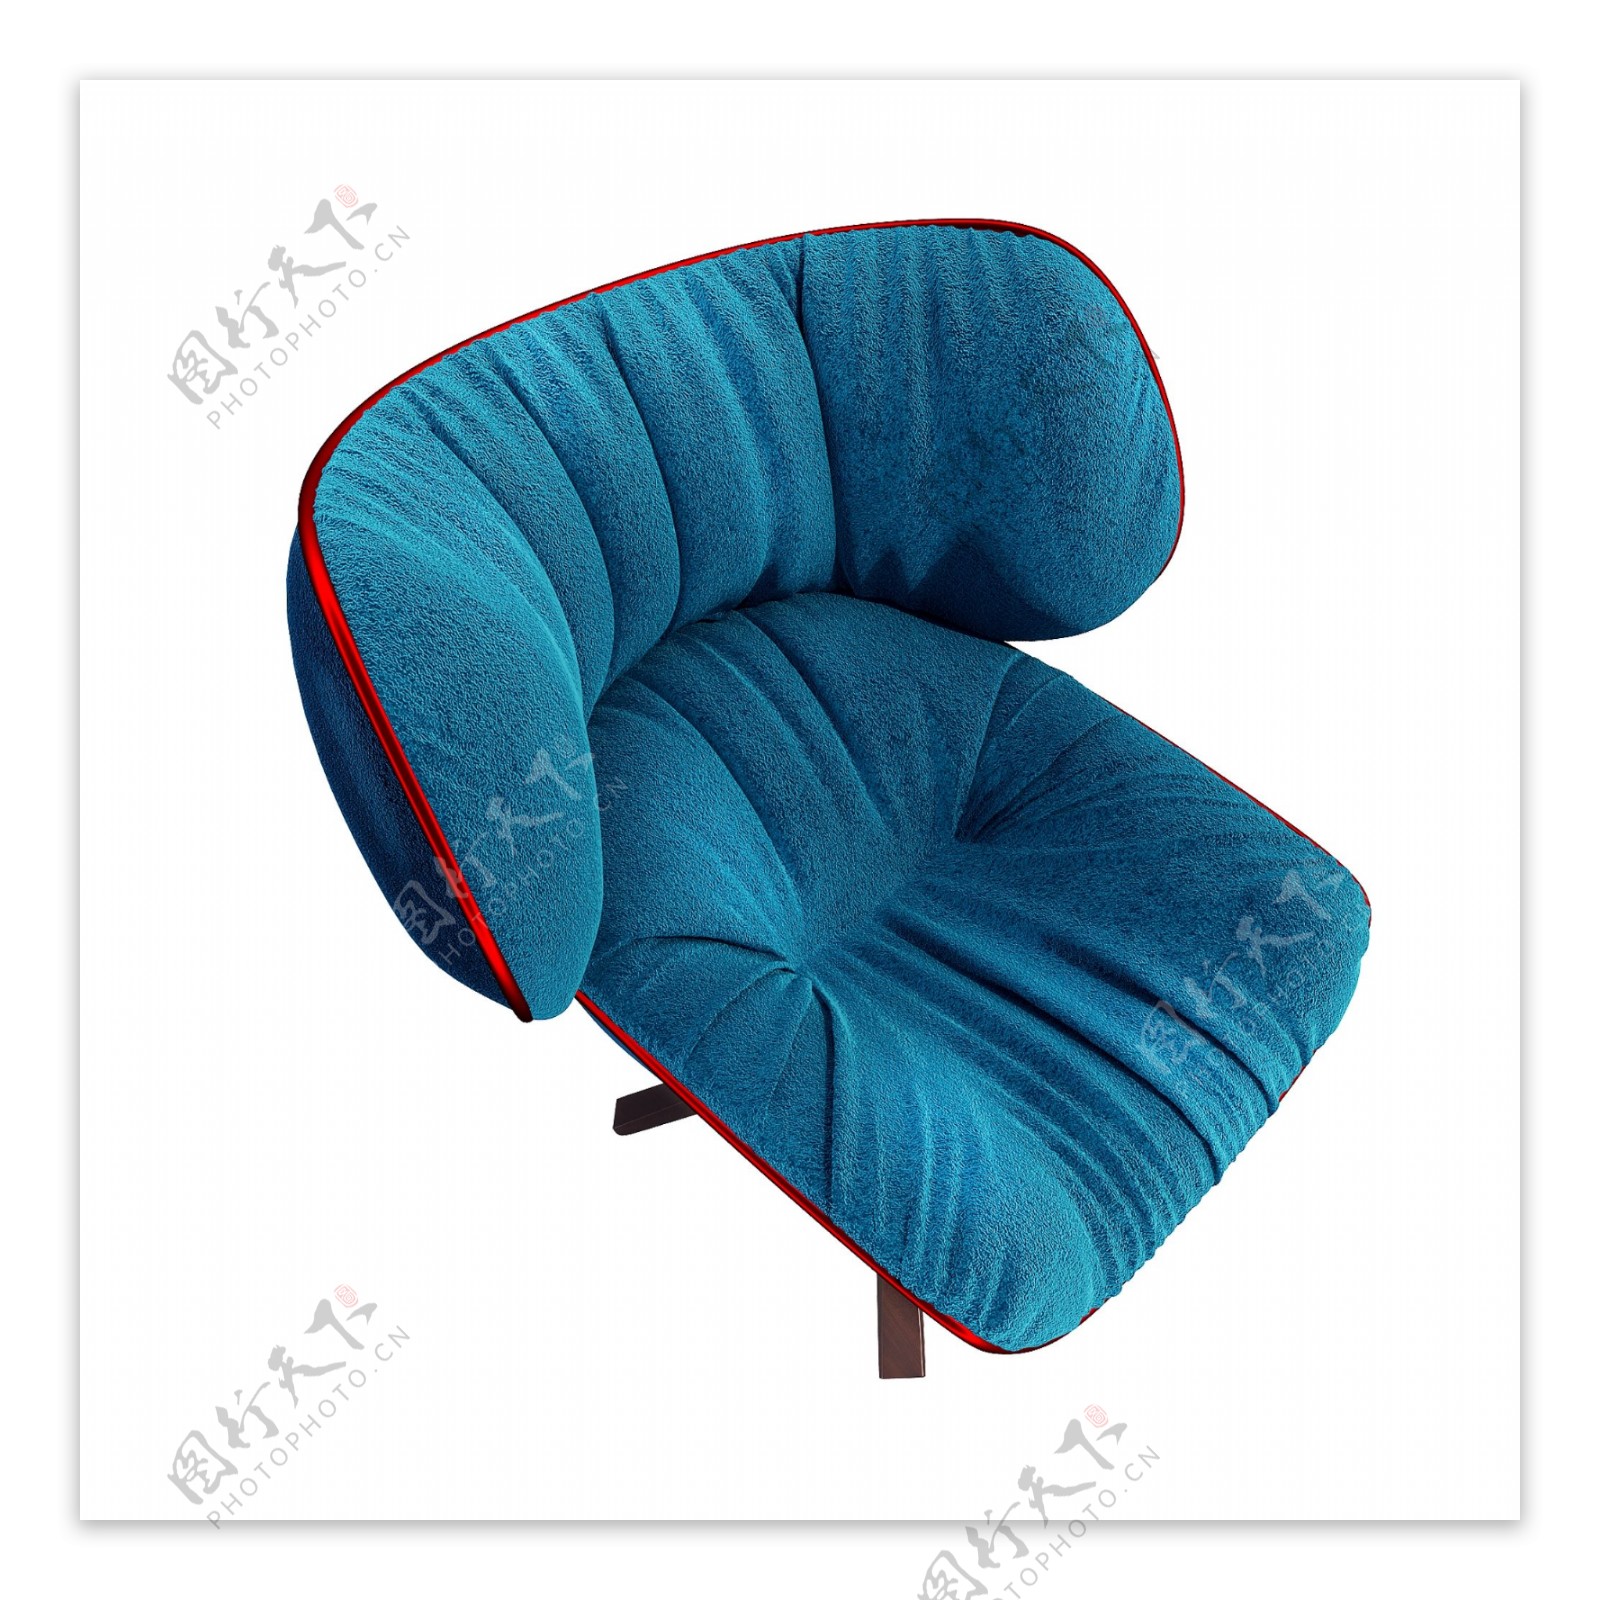 立体质感绒布椅子png图